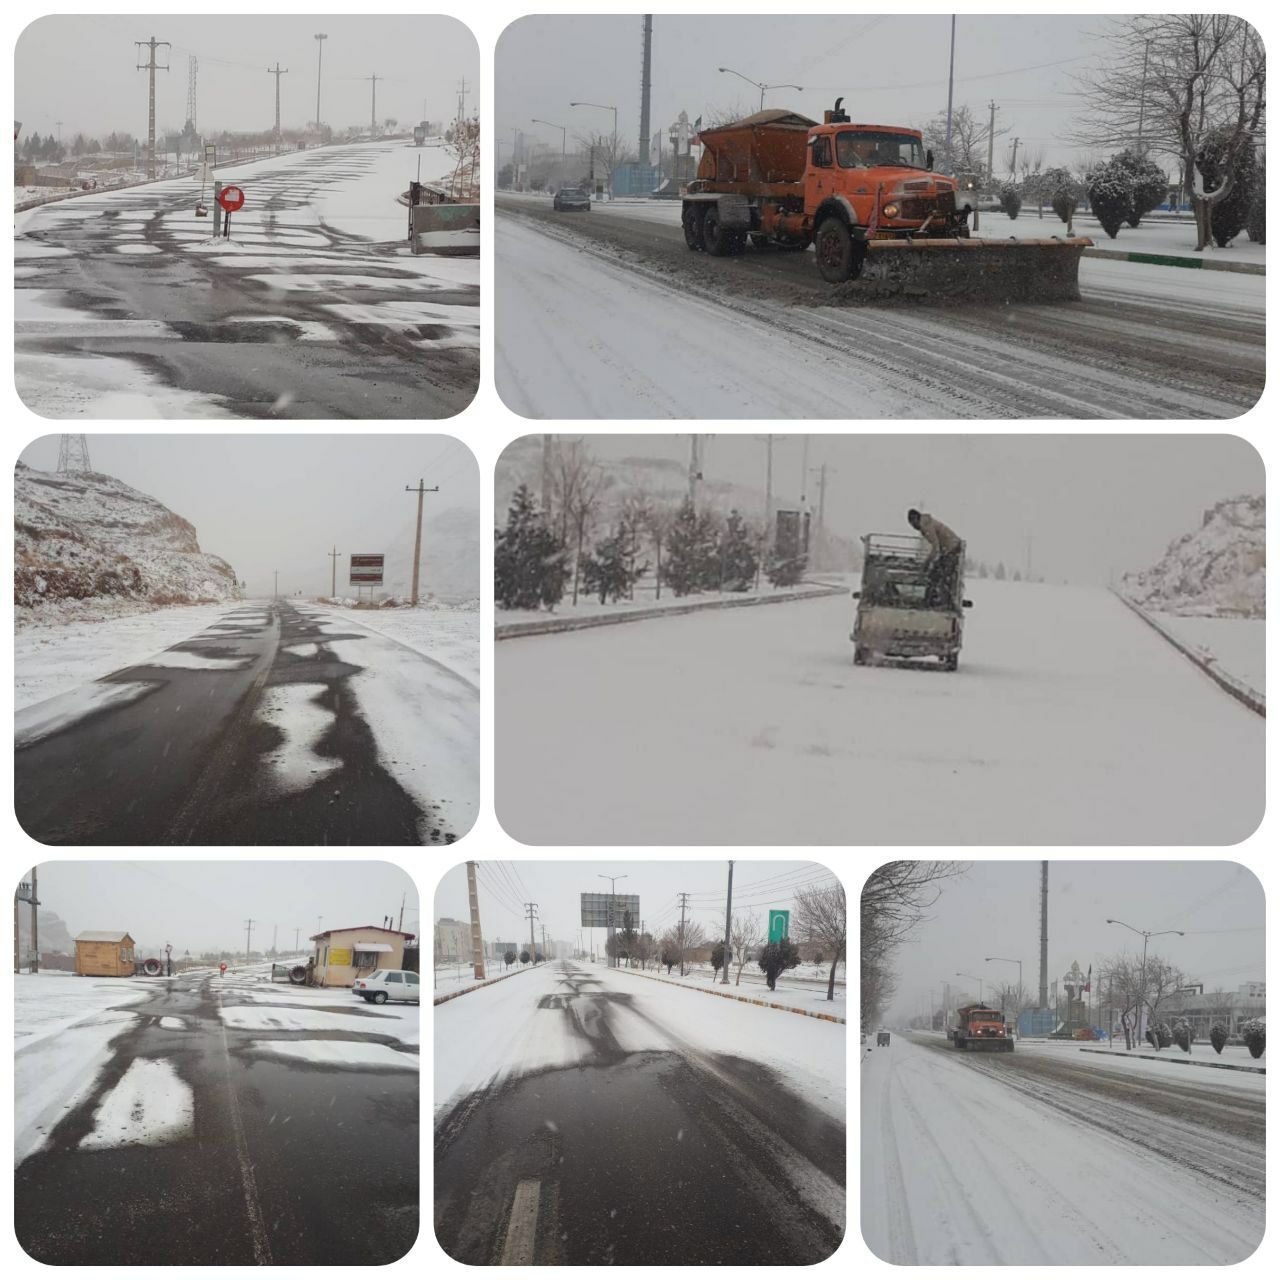 تداوم عملیات برف روبی در نقاط مختلف شهر جلفا